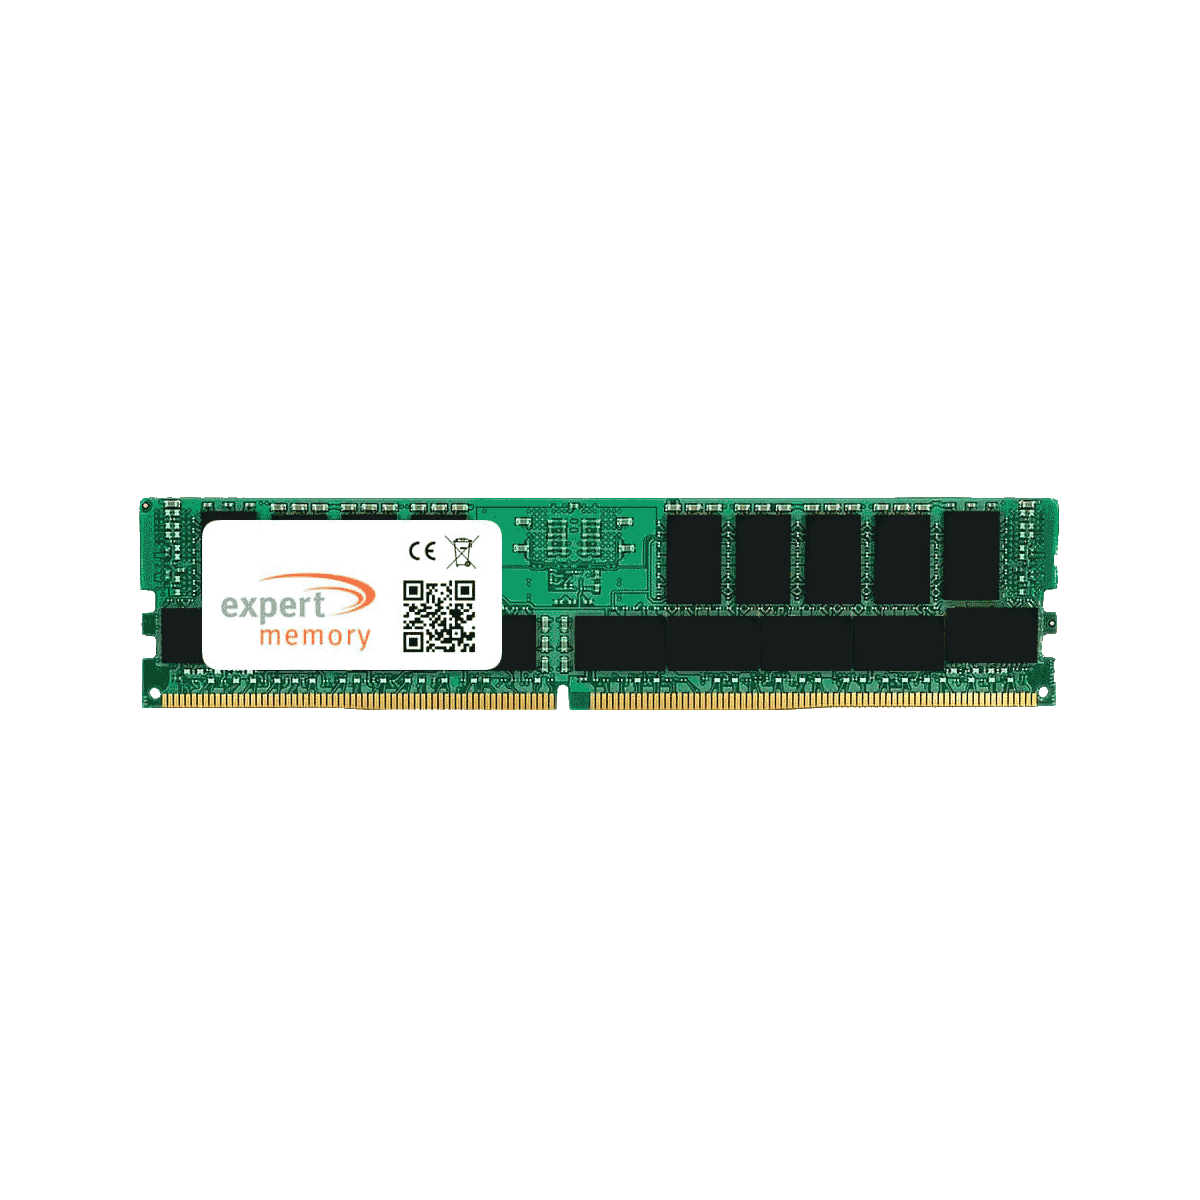 DDR4 64 2933 64GB ECC EXPERT Asus RAM RPA-U1 RDIMM Upgrade Server MEMORY GB K Memory 4Rx4